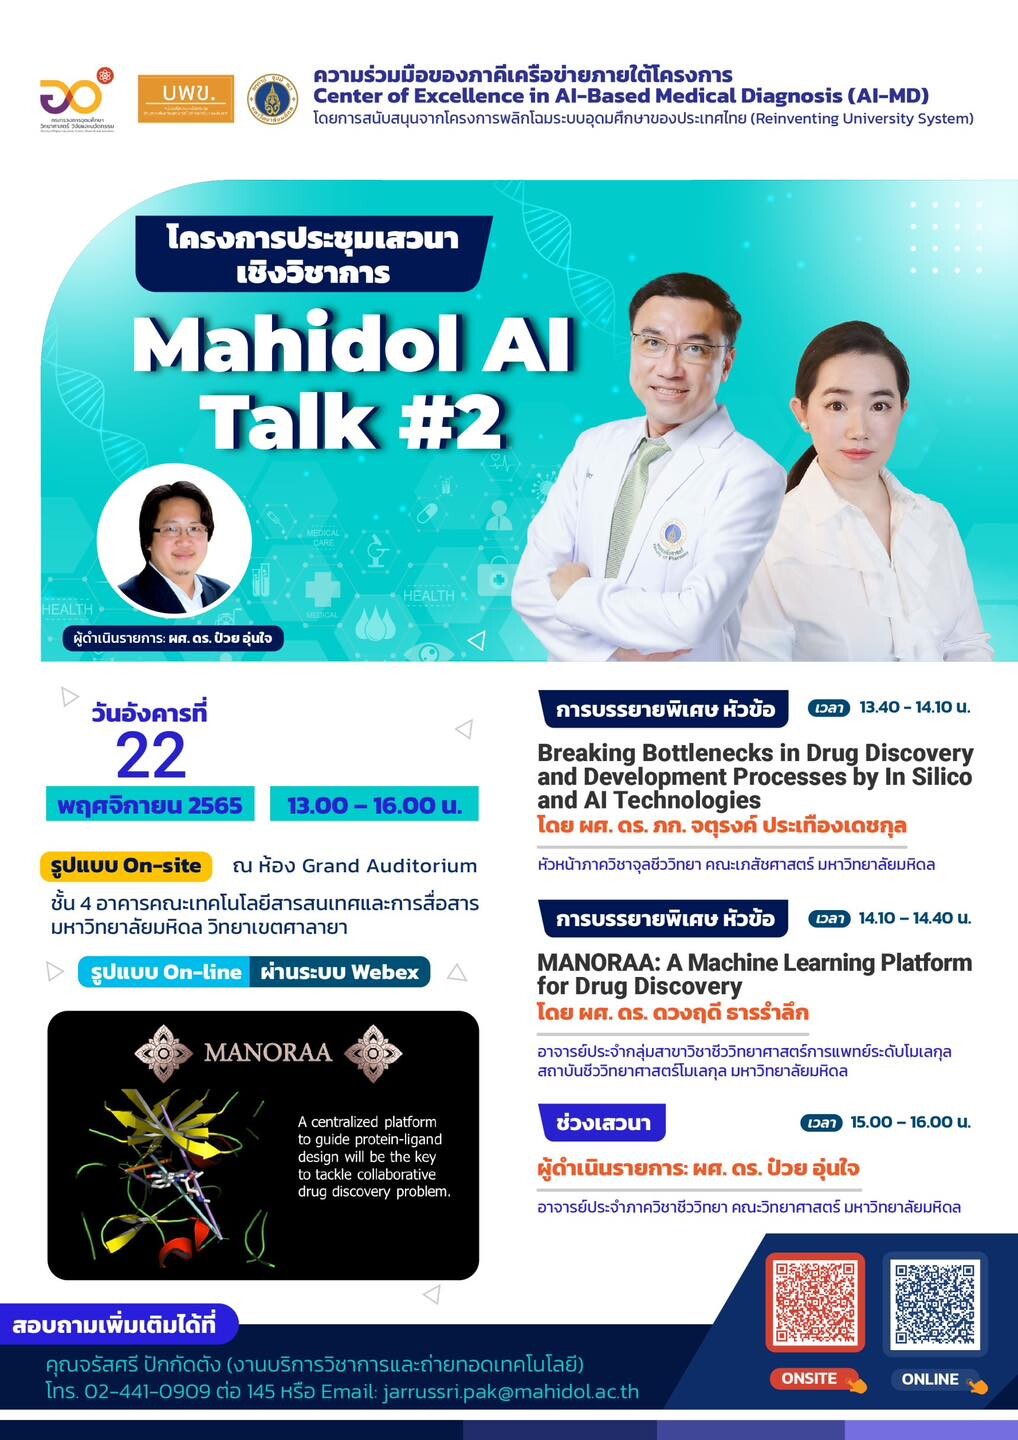 คณะ ICT ม. มหิดลขอเชิญคณาจารย์ นักวิจัย บุคลากร นักศึกษาของมหาวิทยาลัยมหิดล และผู้สนใจ เข้าร่วมเสวนาเชิงวิชาการ Mahidol AI Talk#2